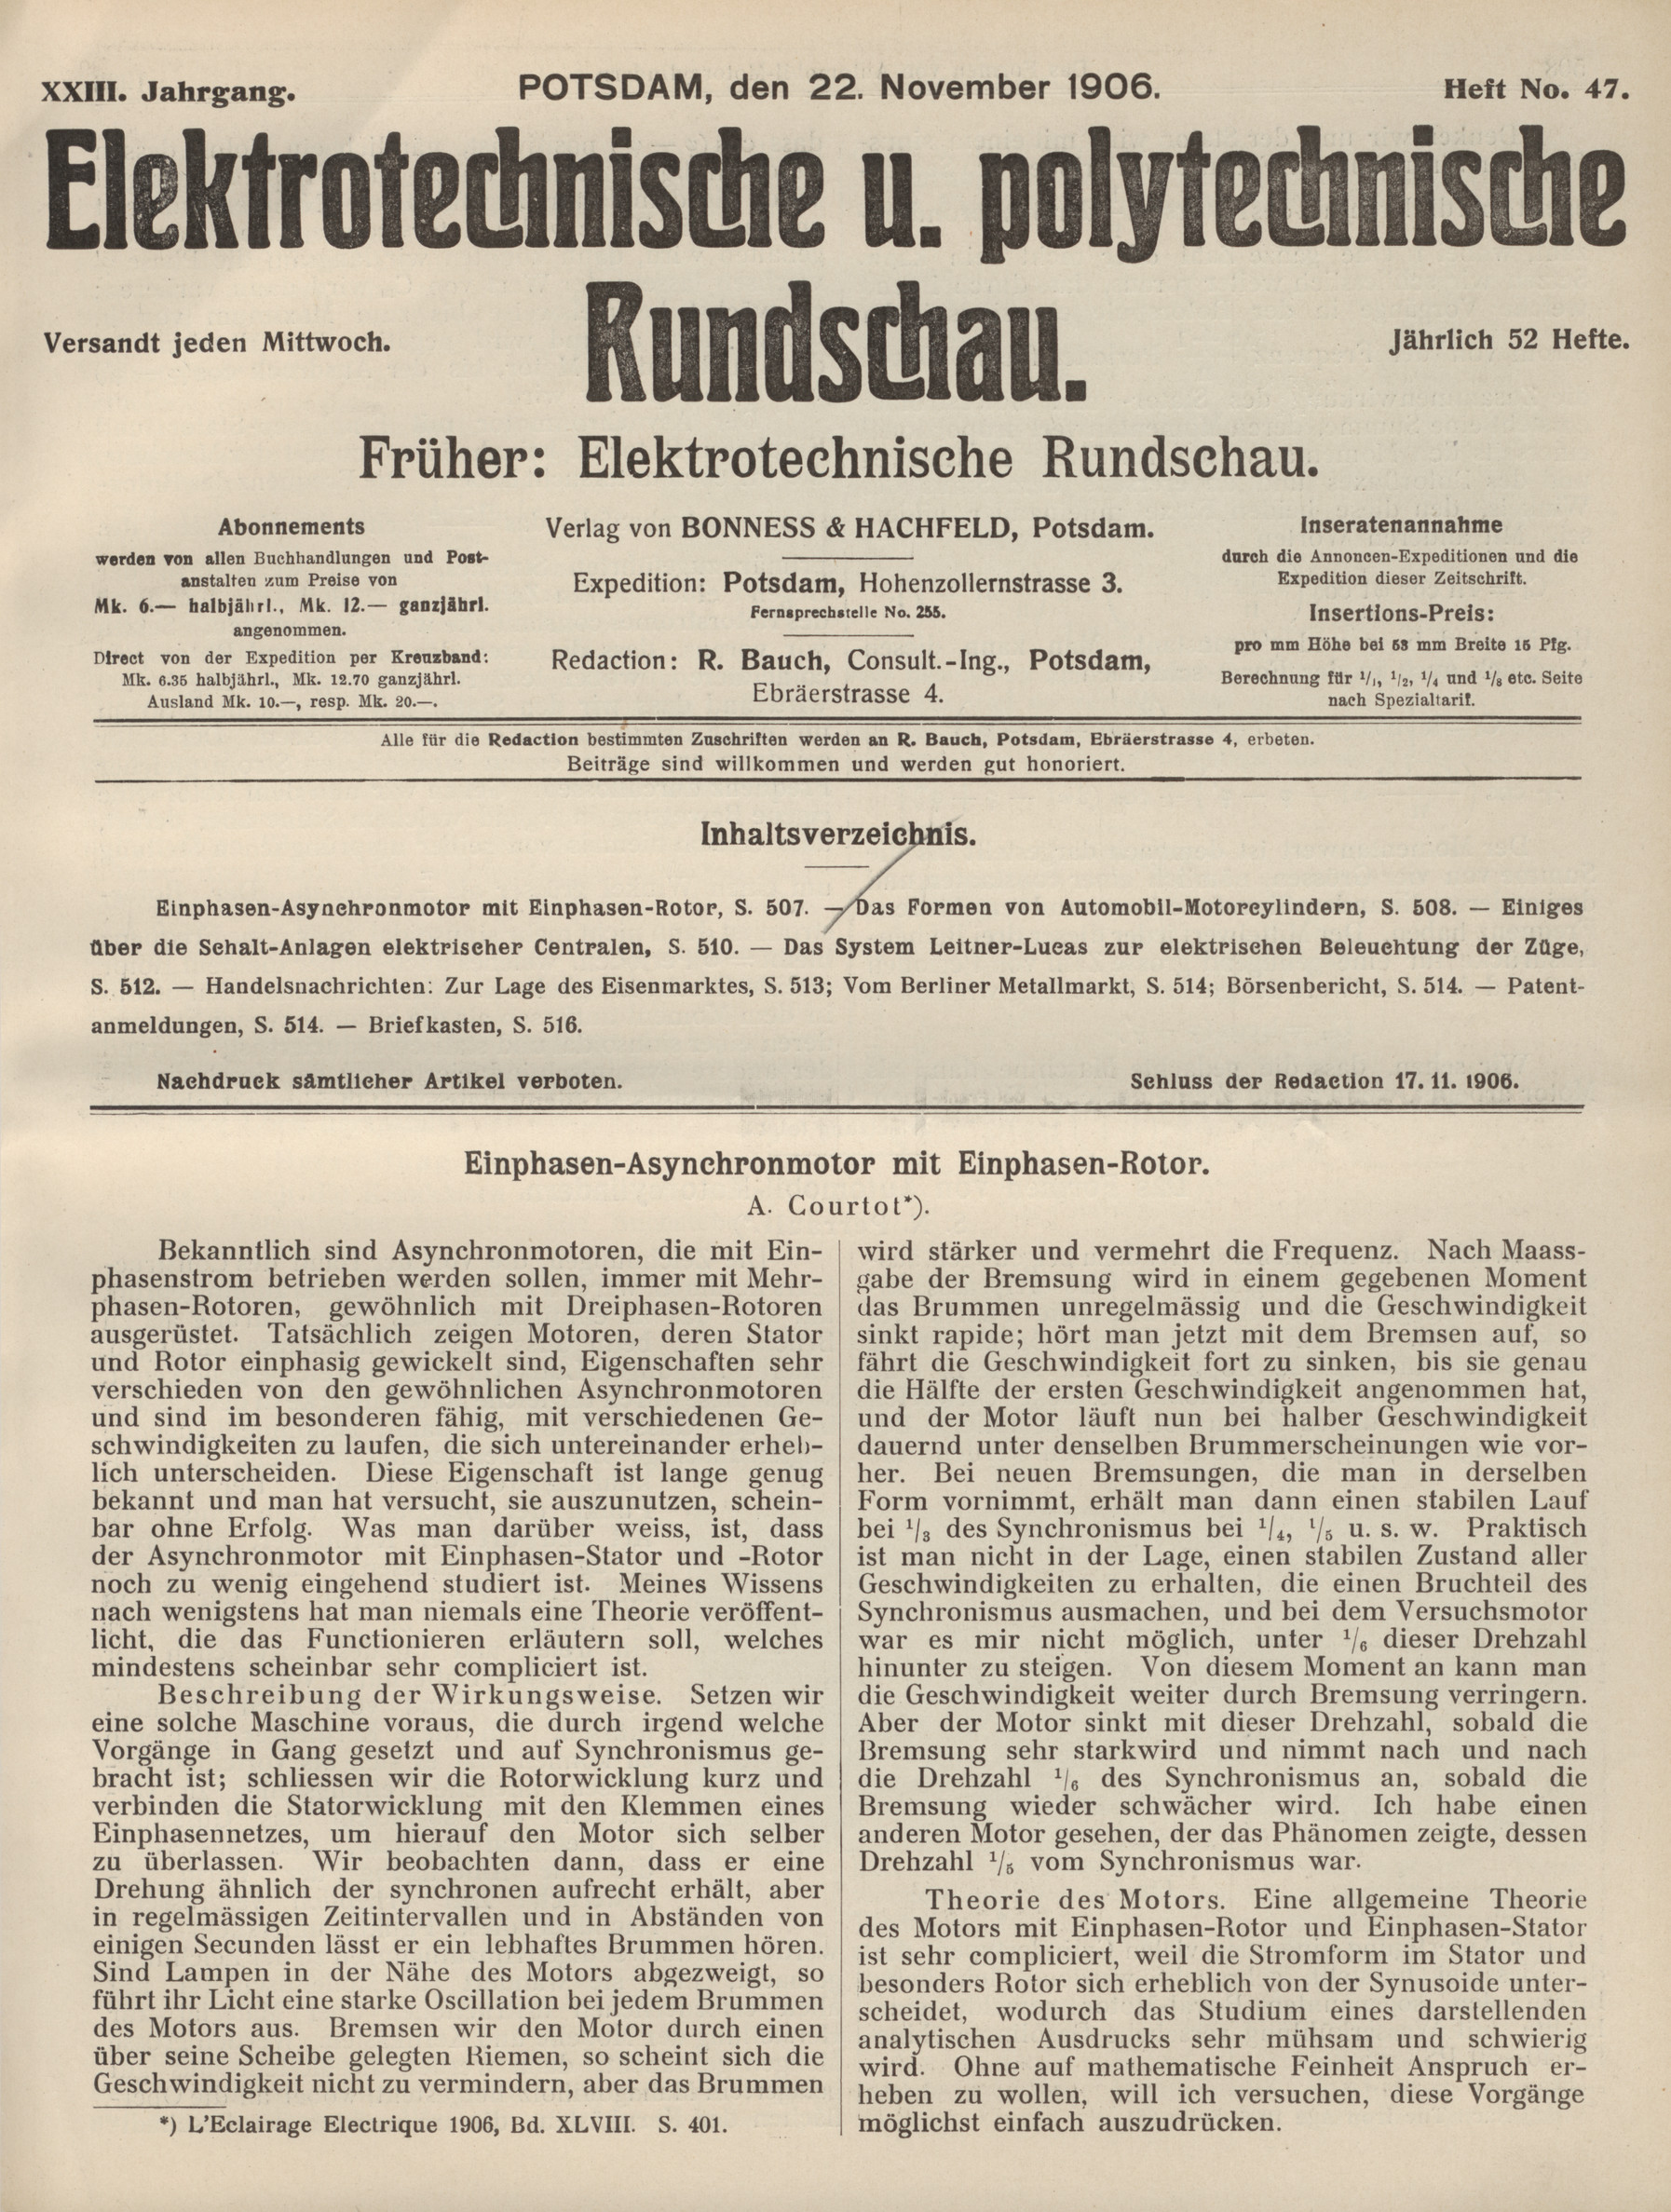 Elektrotechnische und polytechnische Rundschau, XXIII. Jahrgang, Heft No. 47